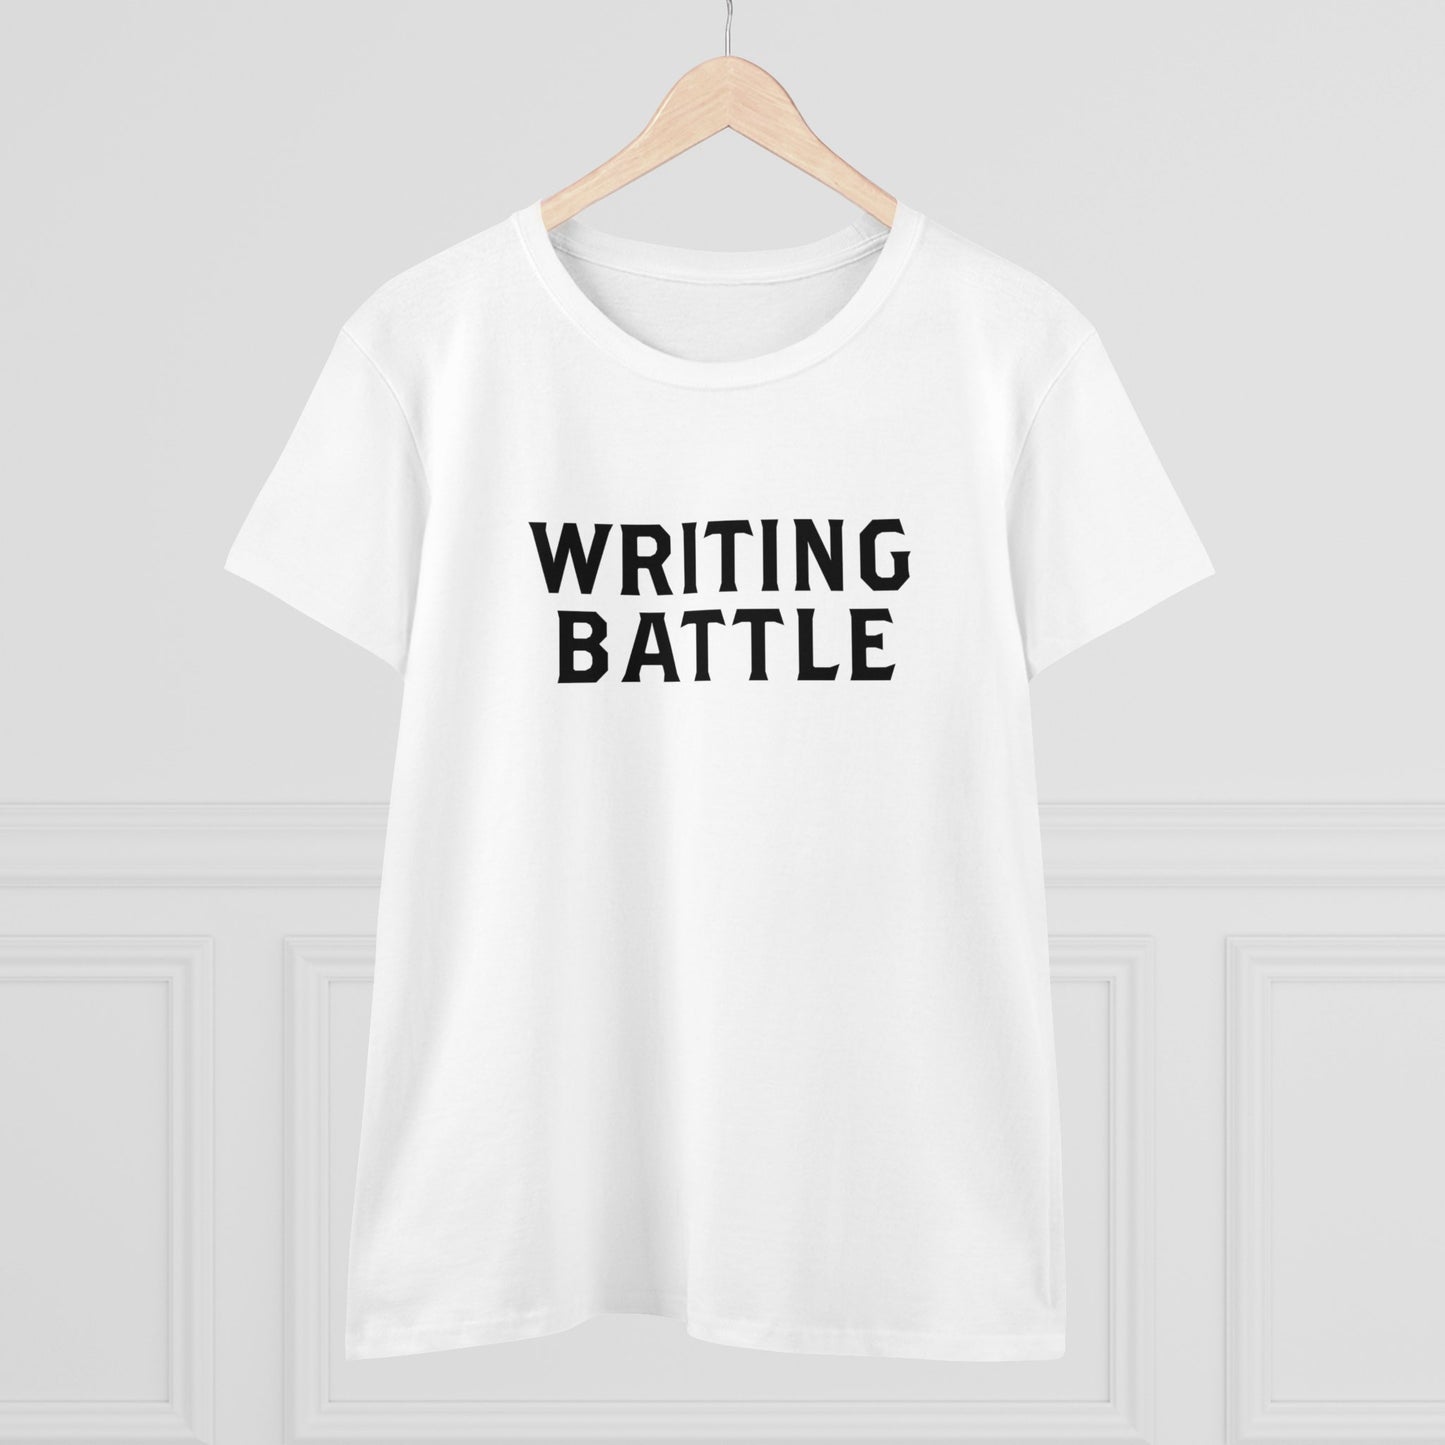 Writing Battle Women's Midweight Cotton Tee - Aus/NZ